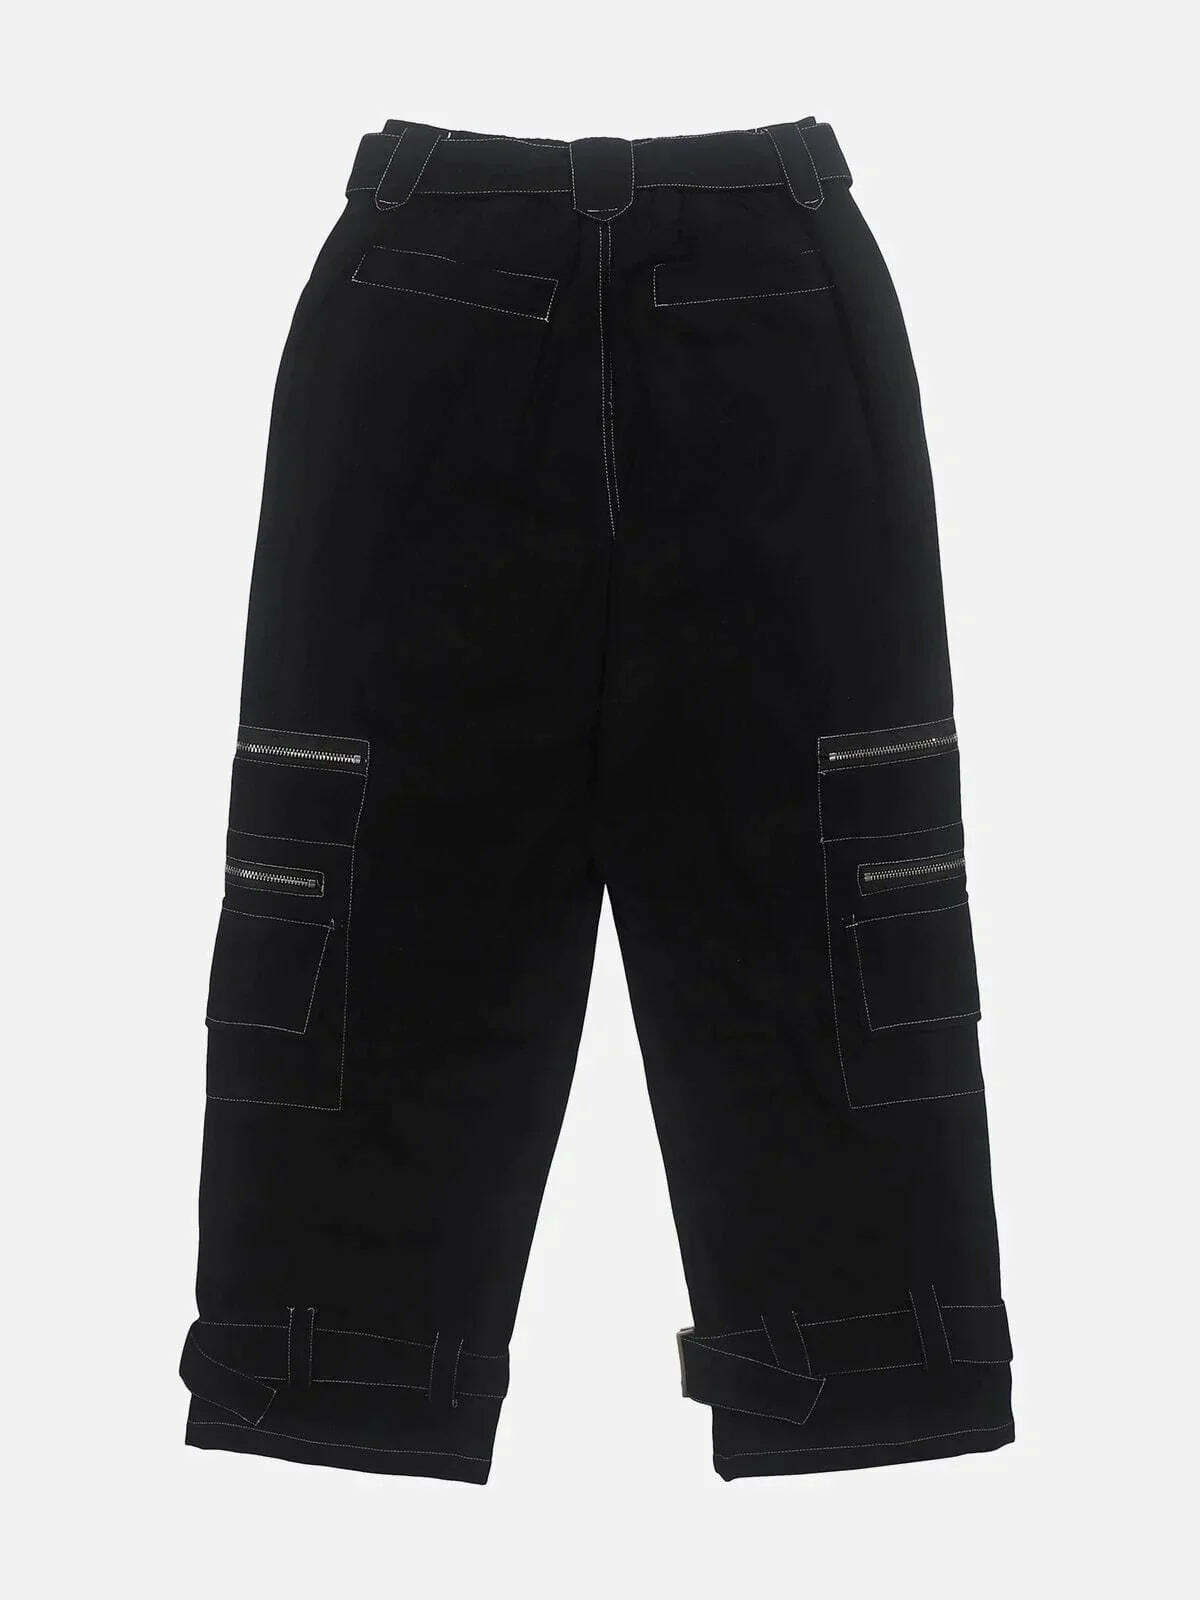 zipup cargo pants edgy streetwear essential 4448